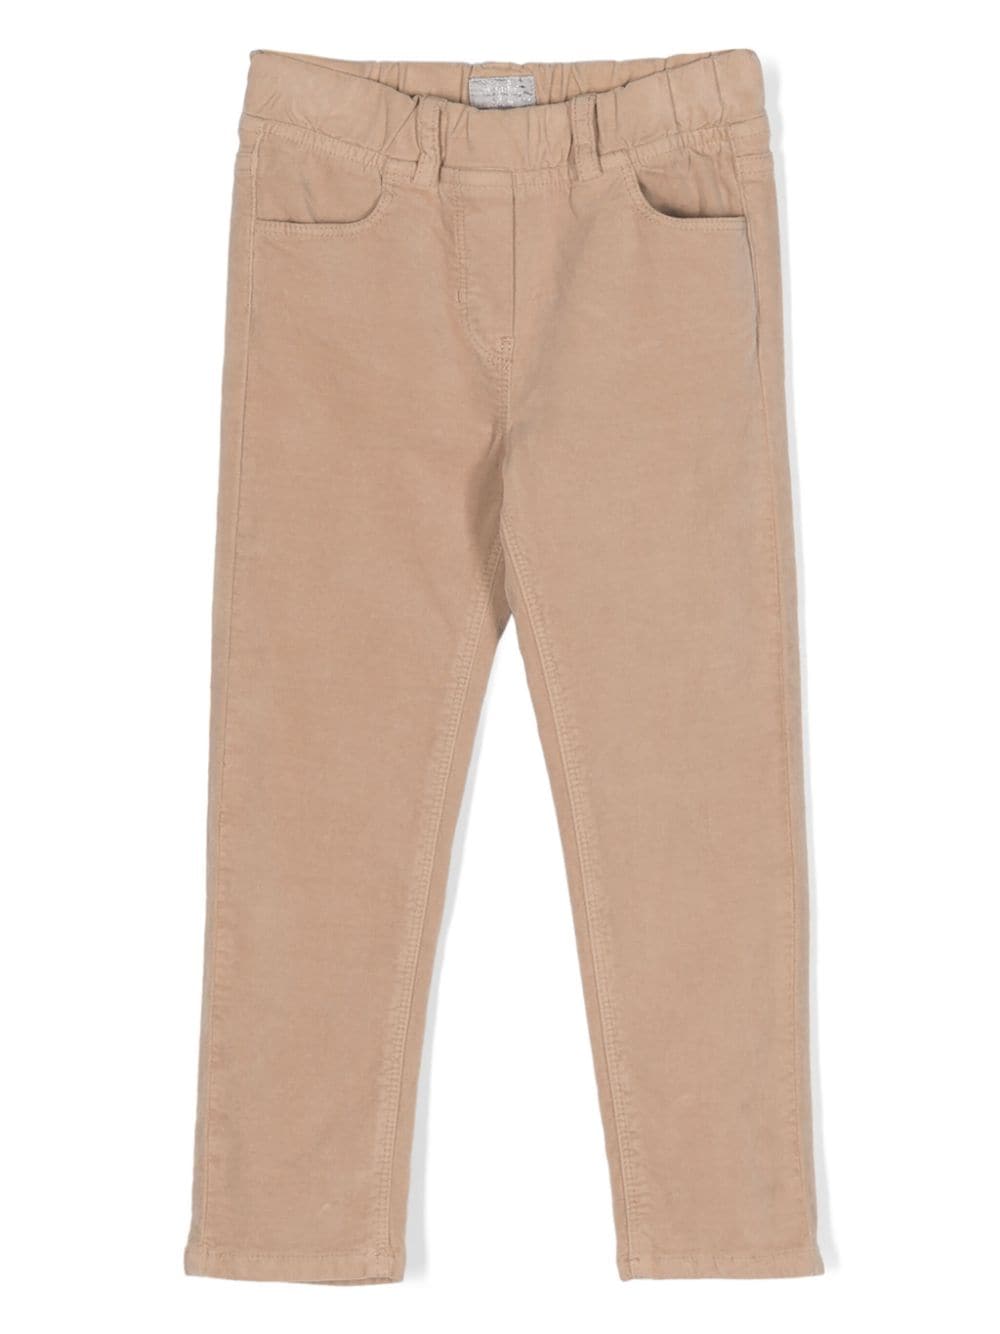 Il Gufo cotton velvet skinny trousers - Toni neutri